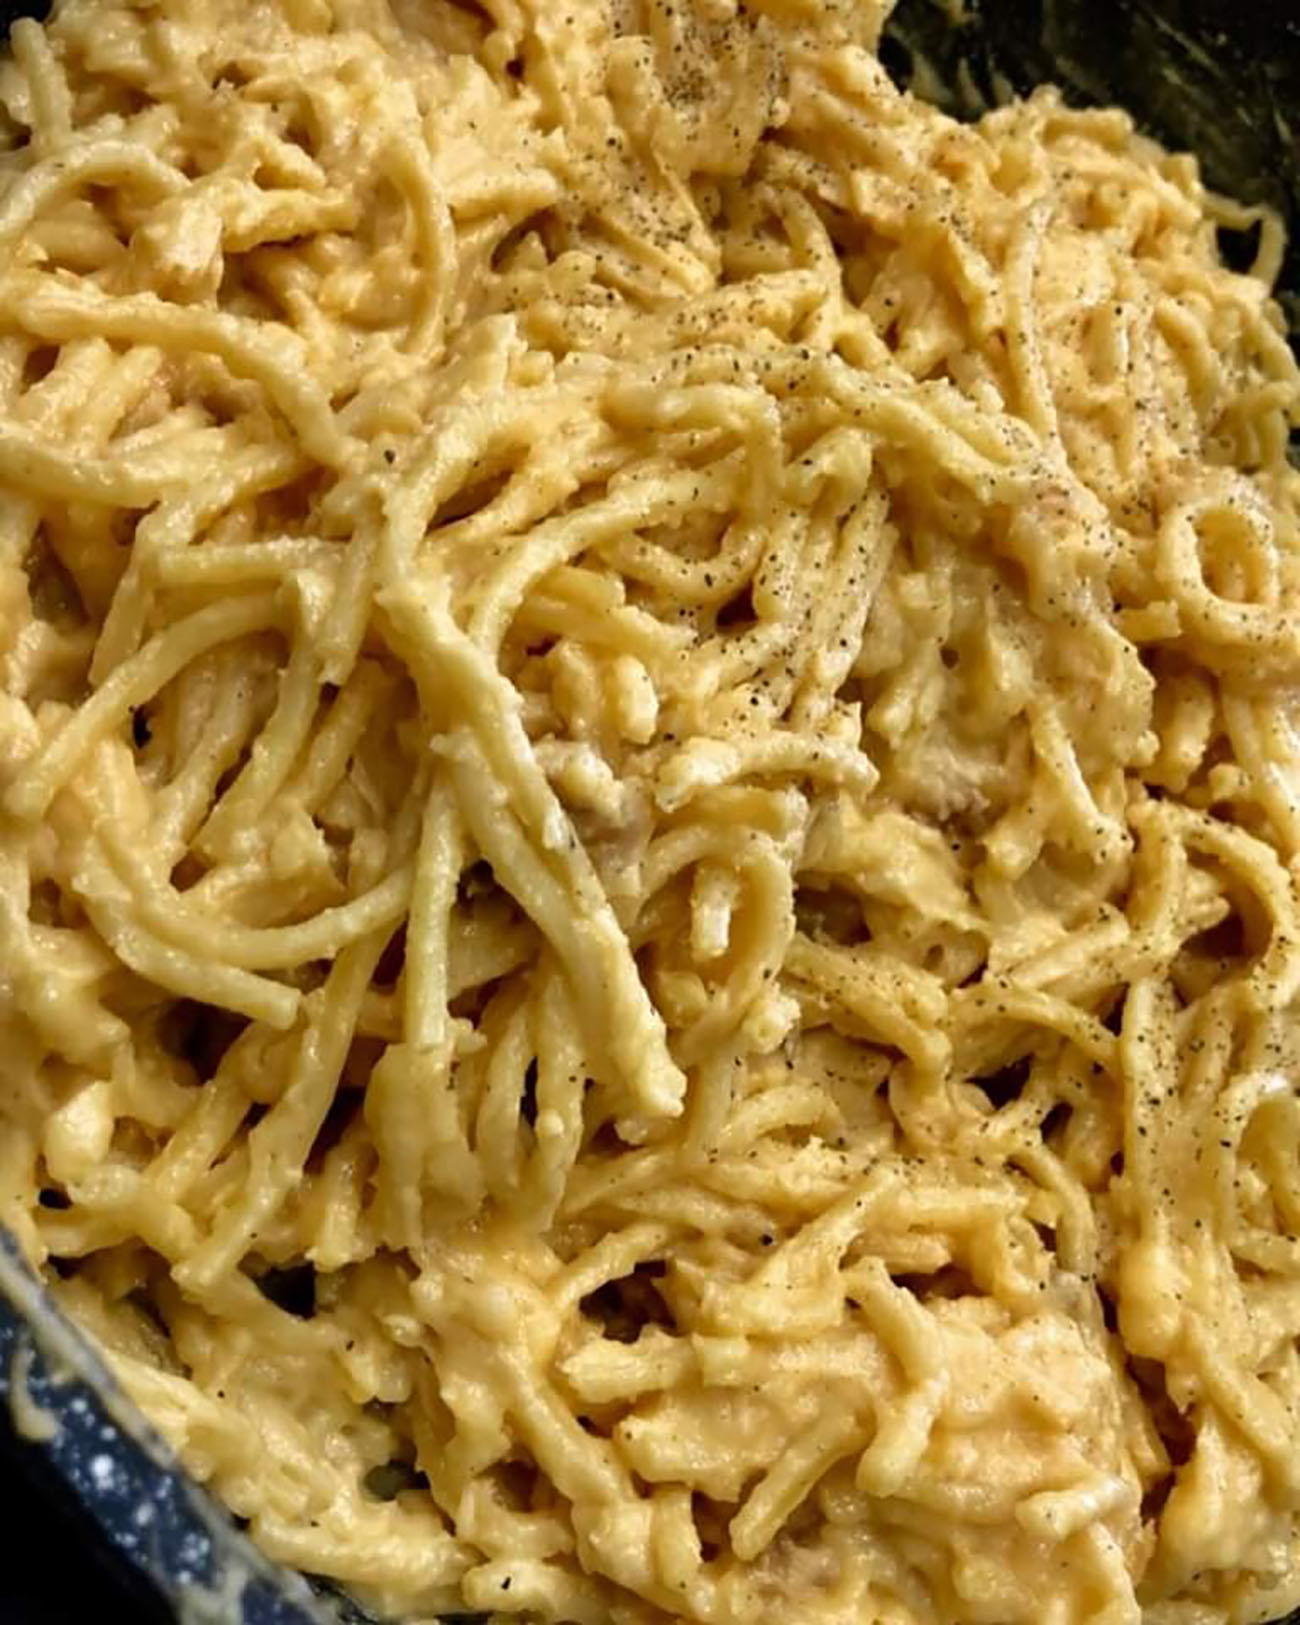 spaghetti-cacio-e-uova,-l’antenato-napoletano-della-carbonara-piu-buono-e-cremoso-con-una-aggiunta-pazzesca